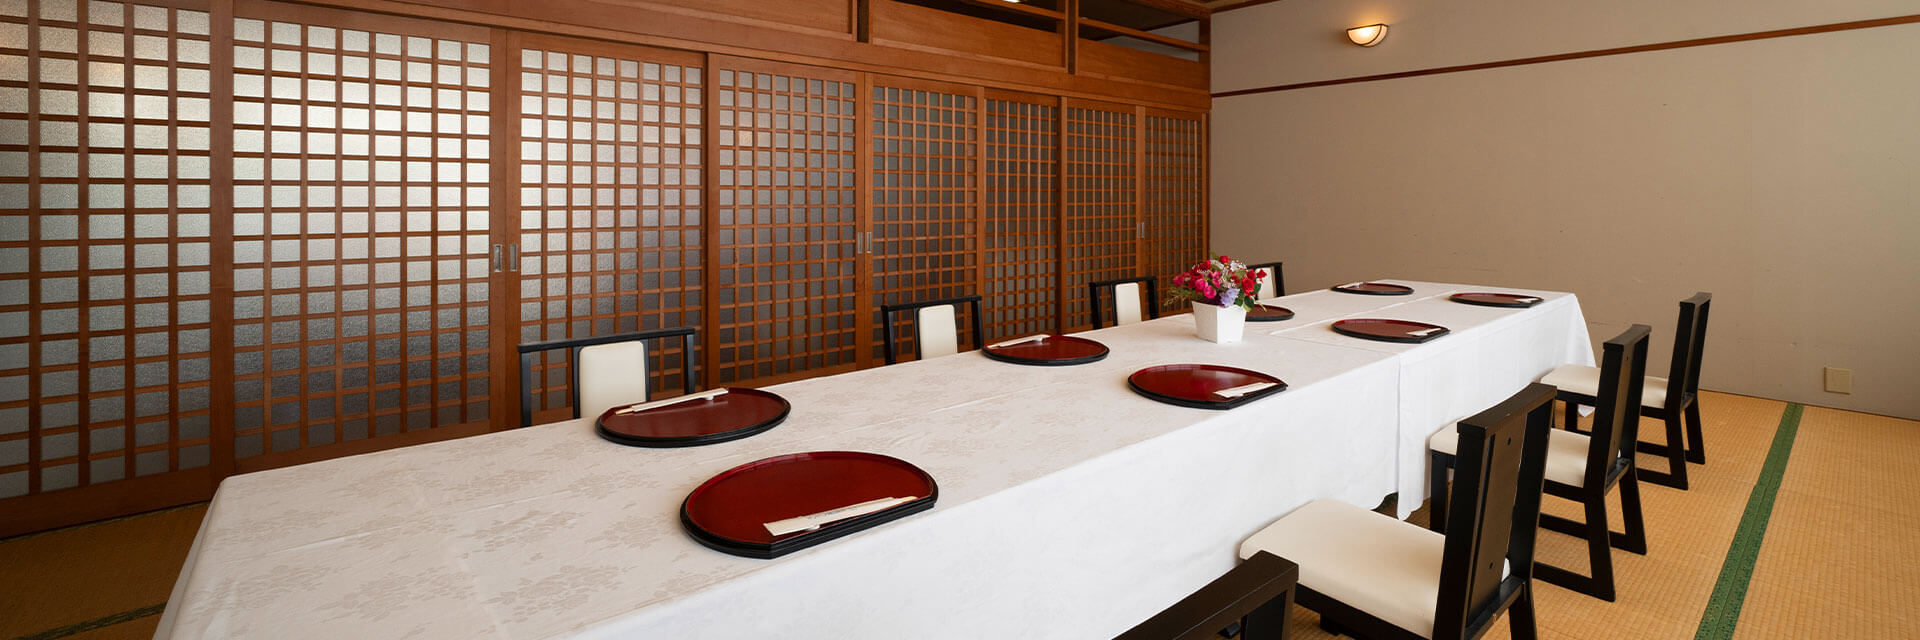 サントピア岡山総社のレストランのご案内ページです。